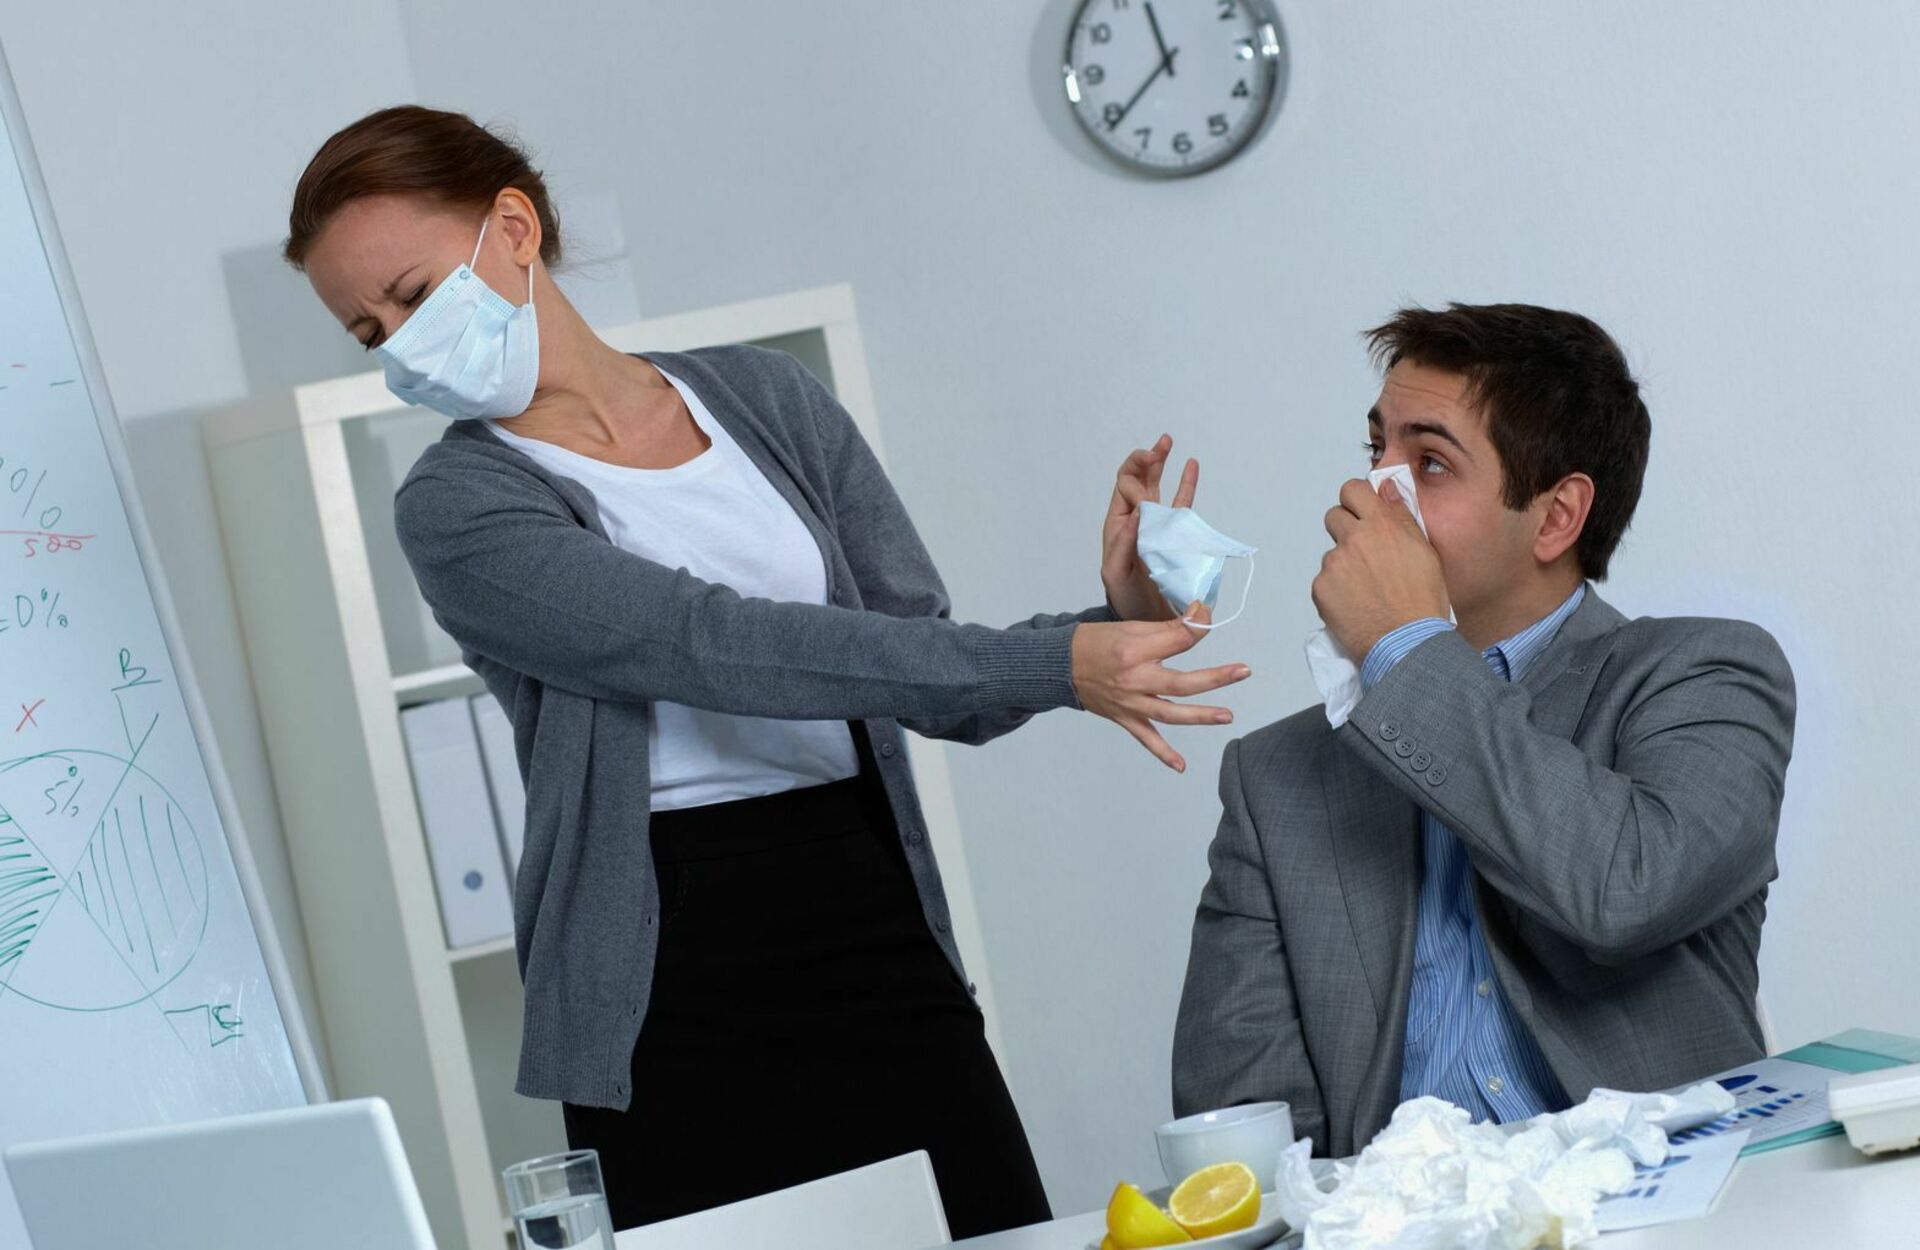 Продолжительность переговоров. Чихает в офисе. Избегайте контактов с кашляющими людьми. Избегать контакта с больными. Избегайте контакта с больными людьми.